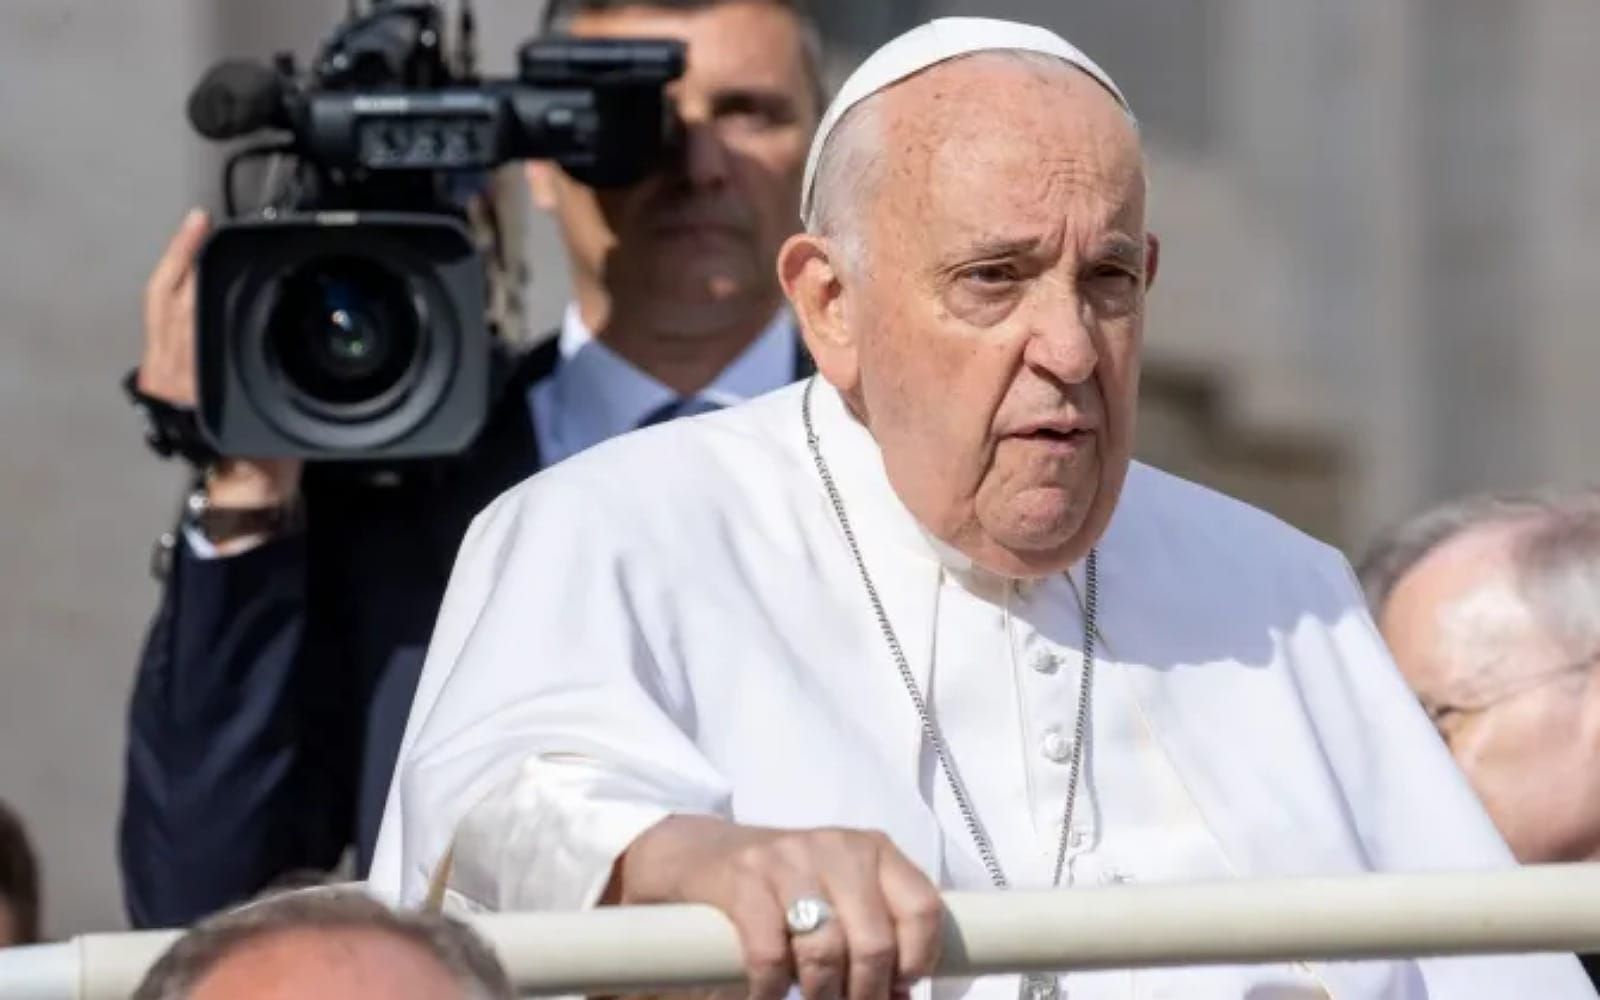 A humildade salva do Maligno e do perigo de se tornar cúmplice dele, diz o papa Francisco